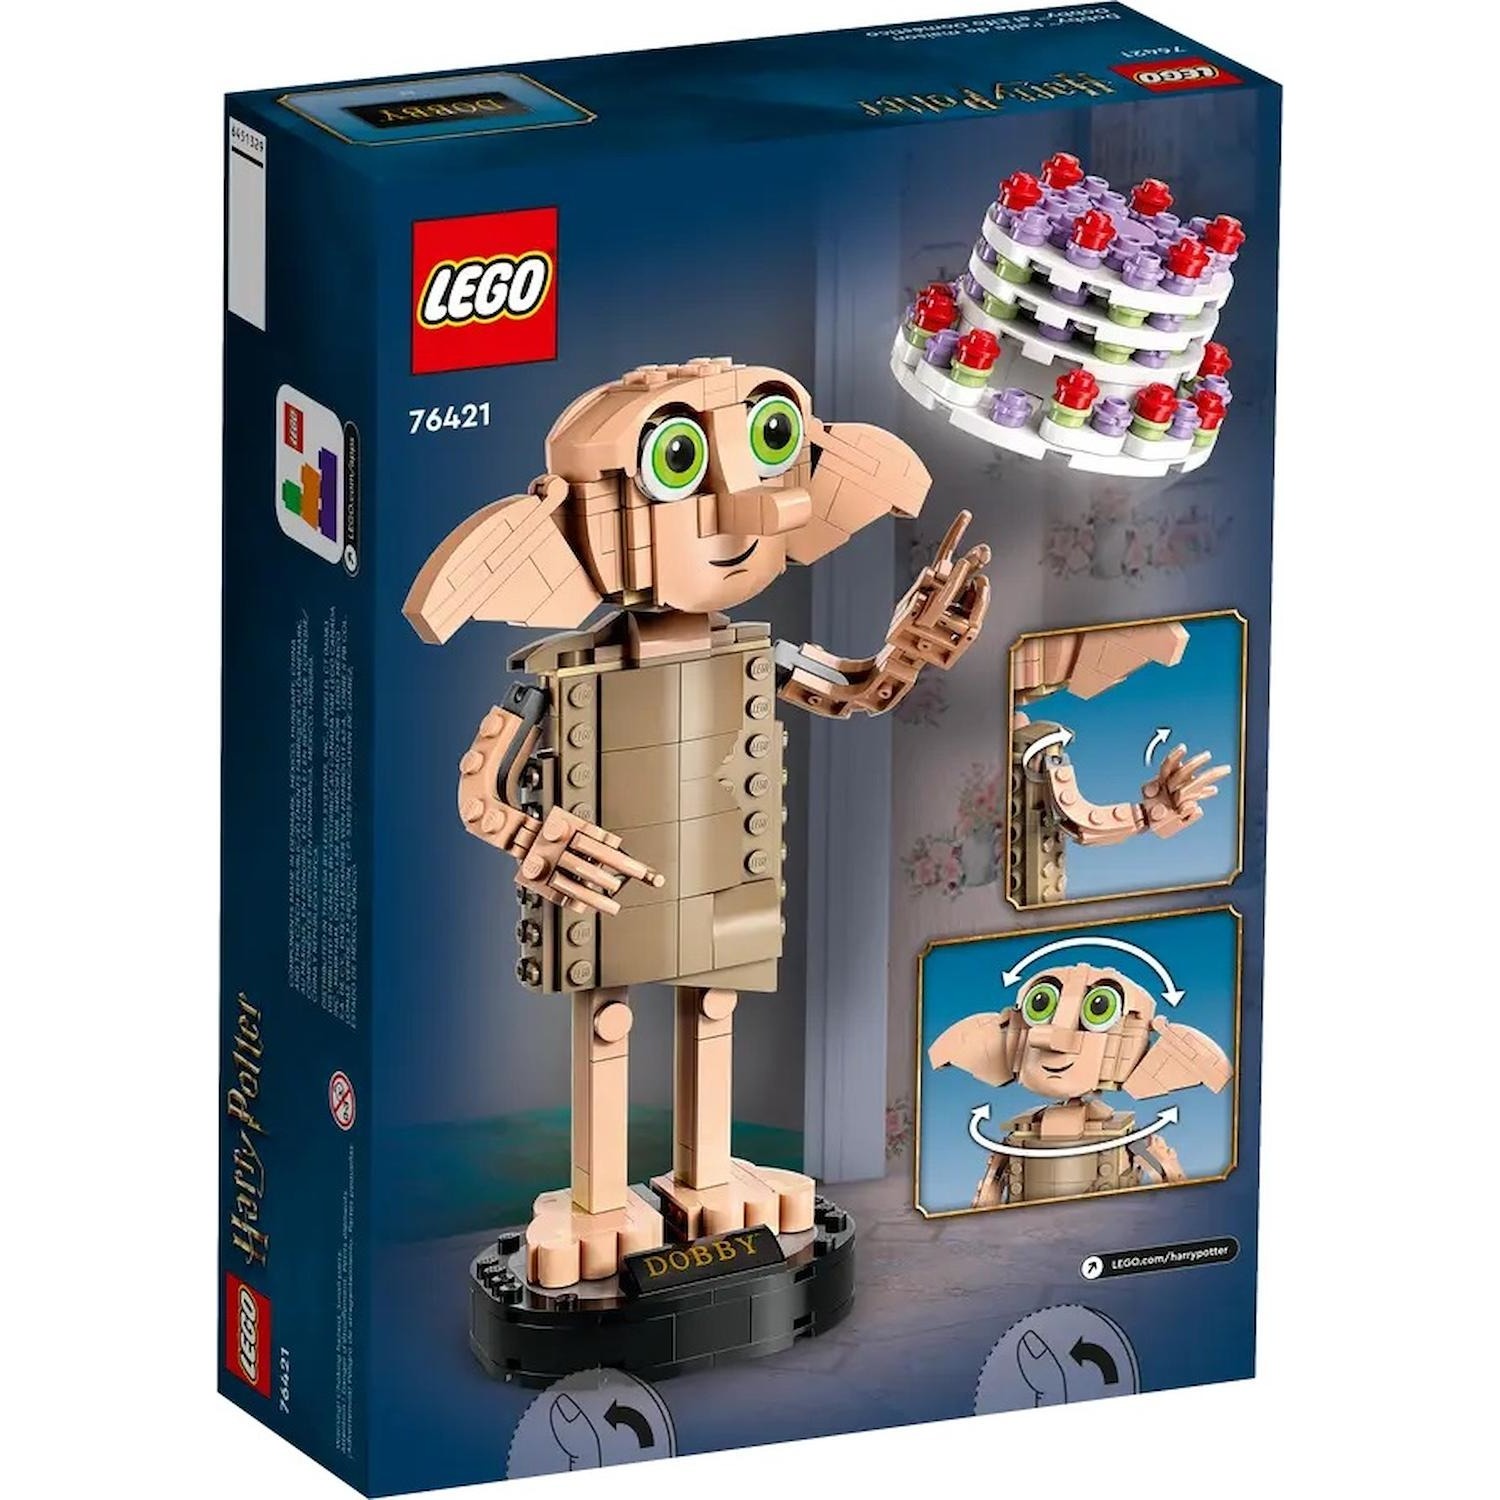 Immagine per Lego Harry Potter Dobby, l'elfo domestico da DIMOStore